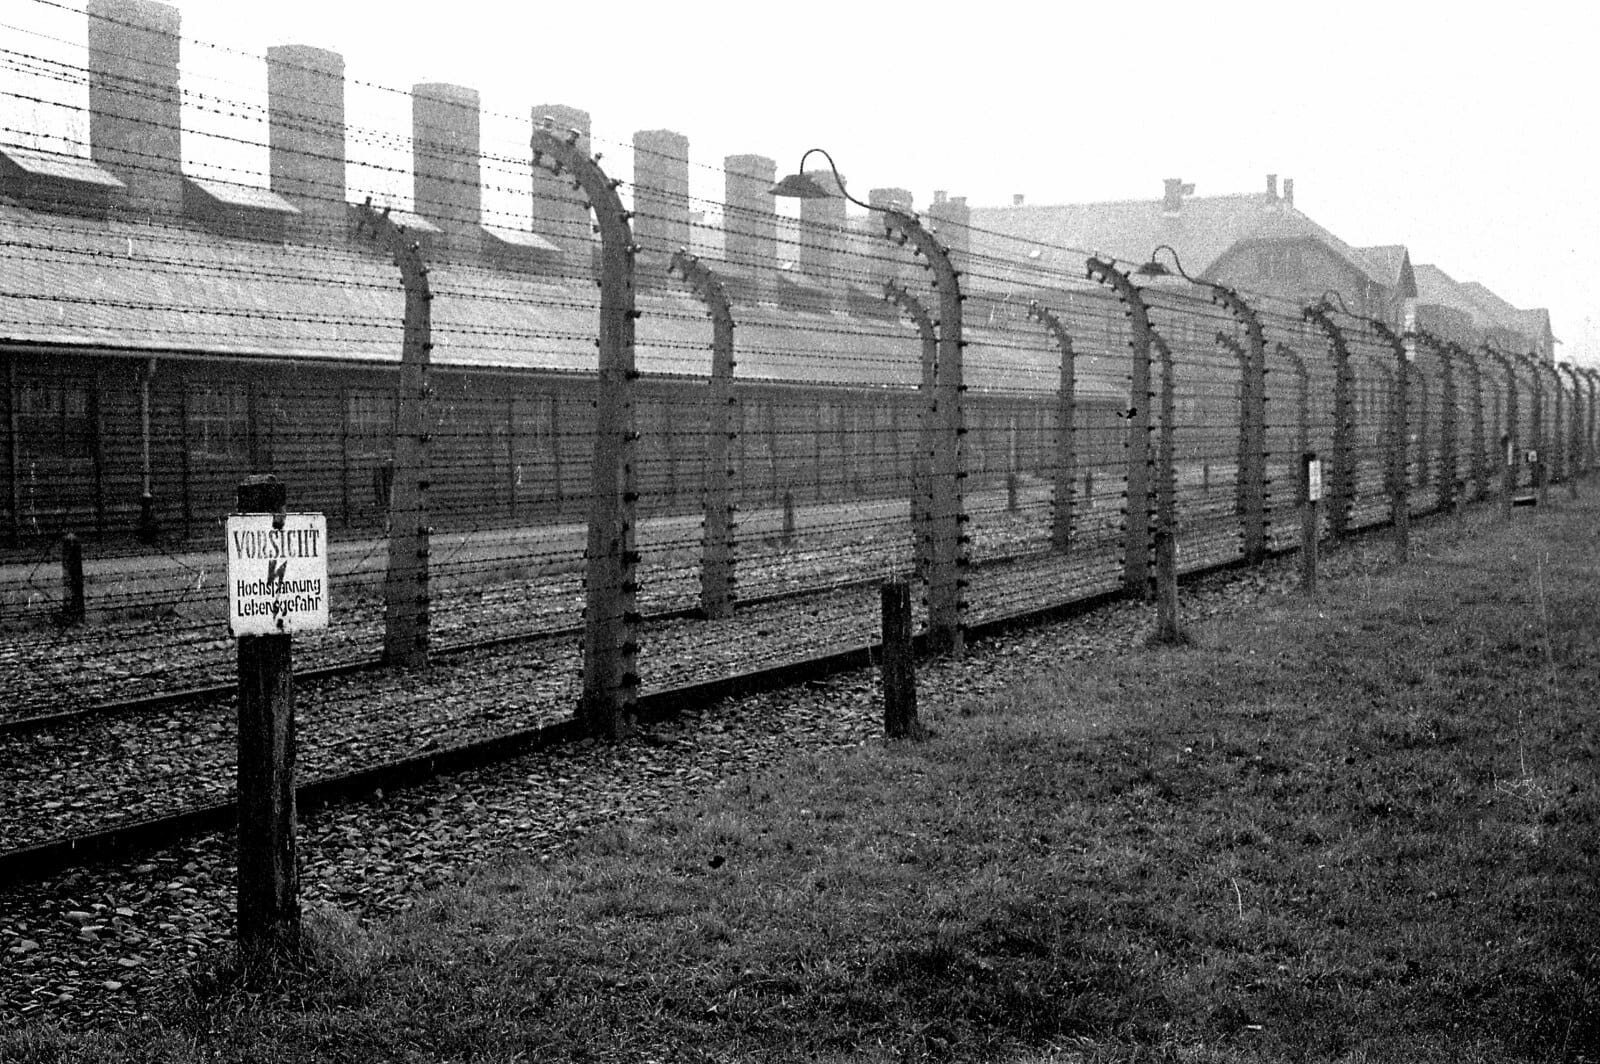 Лагеря смерти германий. Концентрационный лагерь Аушвиц. Концентрационный лагерь Освенцим. Лагеря Освенцим Аушвиц-Биркенау. Концентрационный лагерь Освенцим (Auschwitz concentration Camp), Польша.